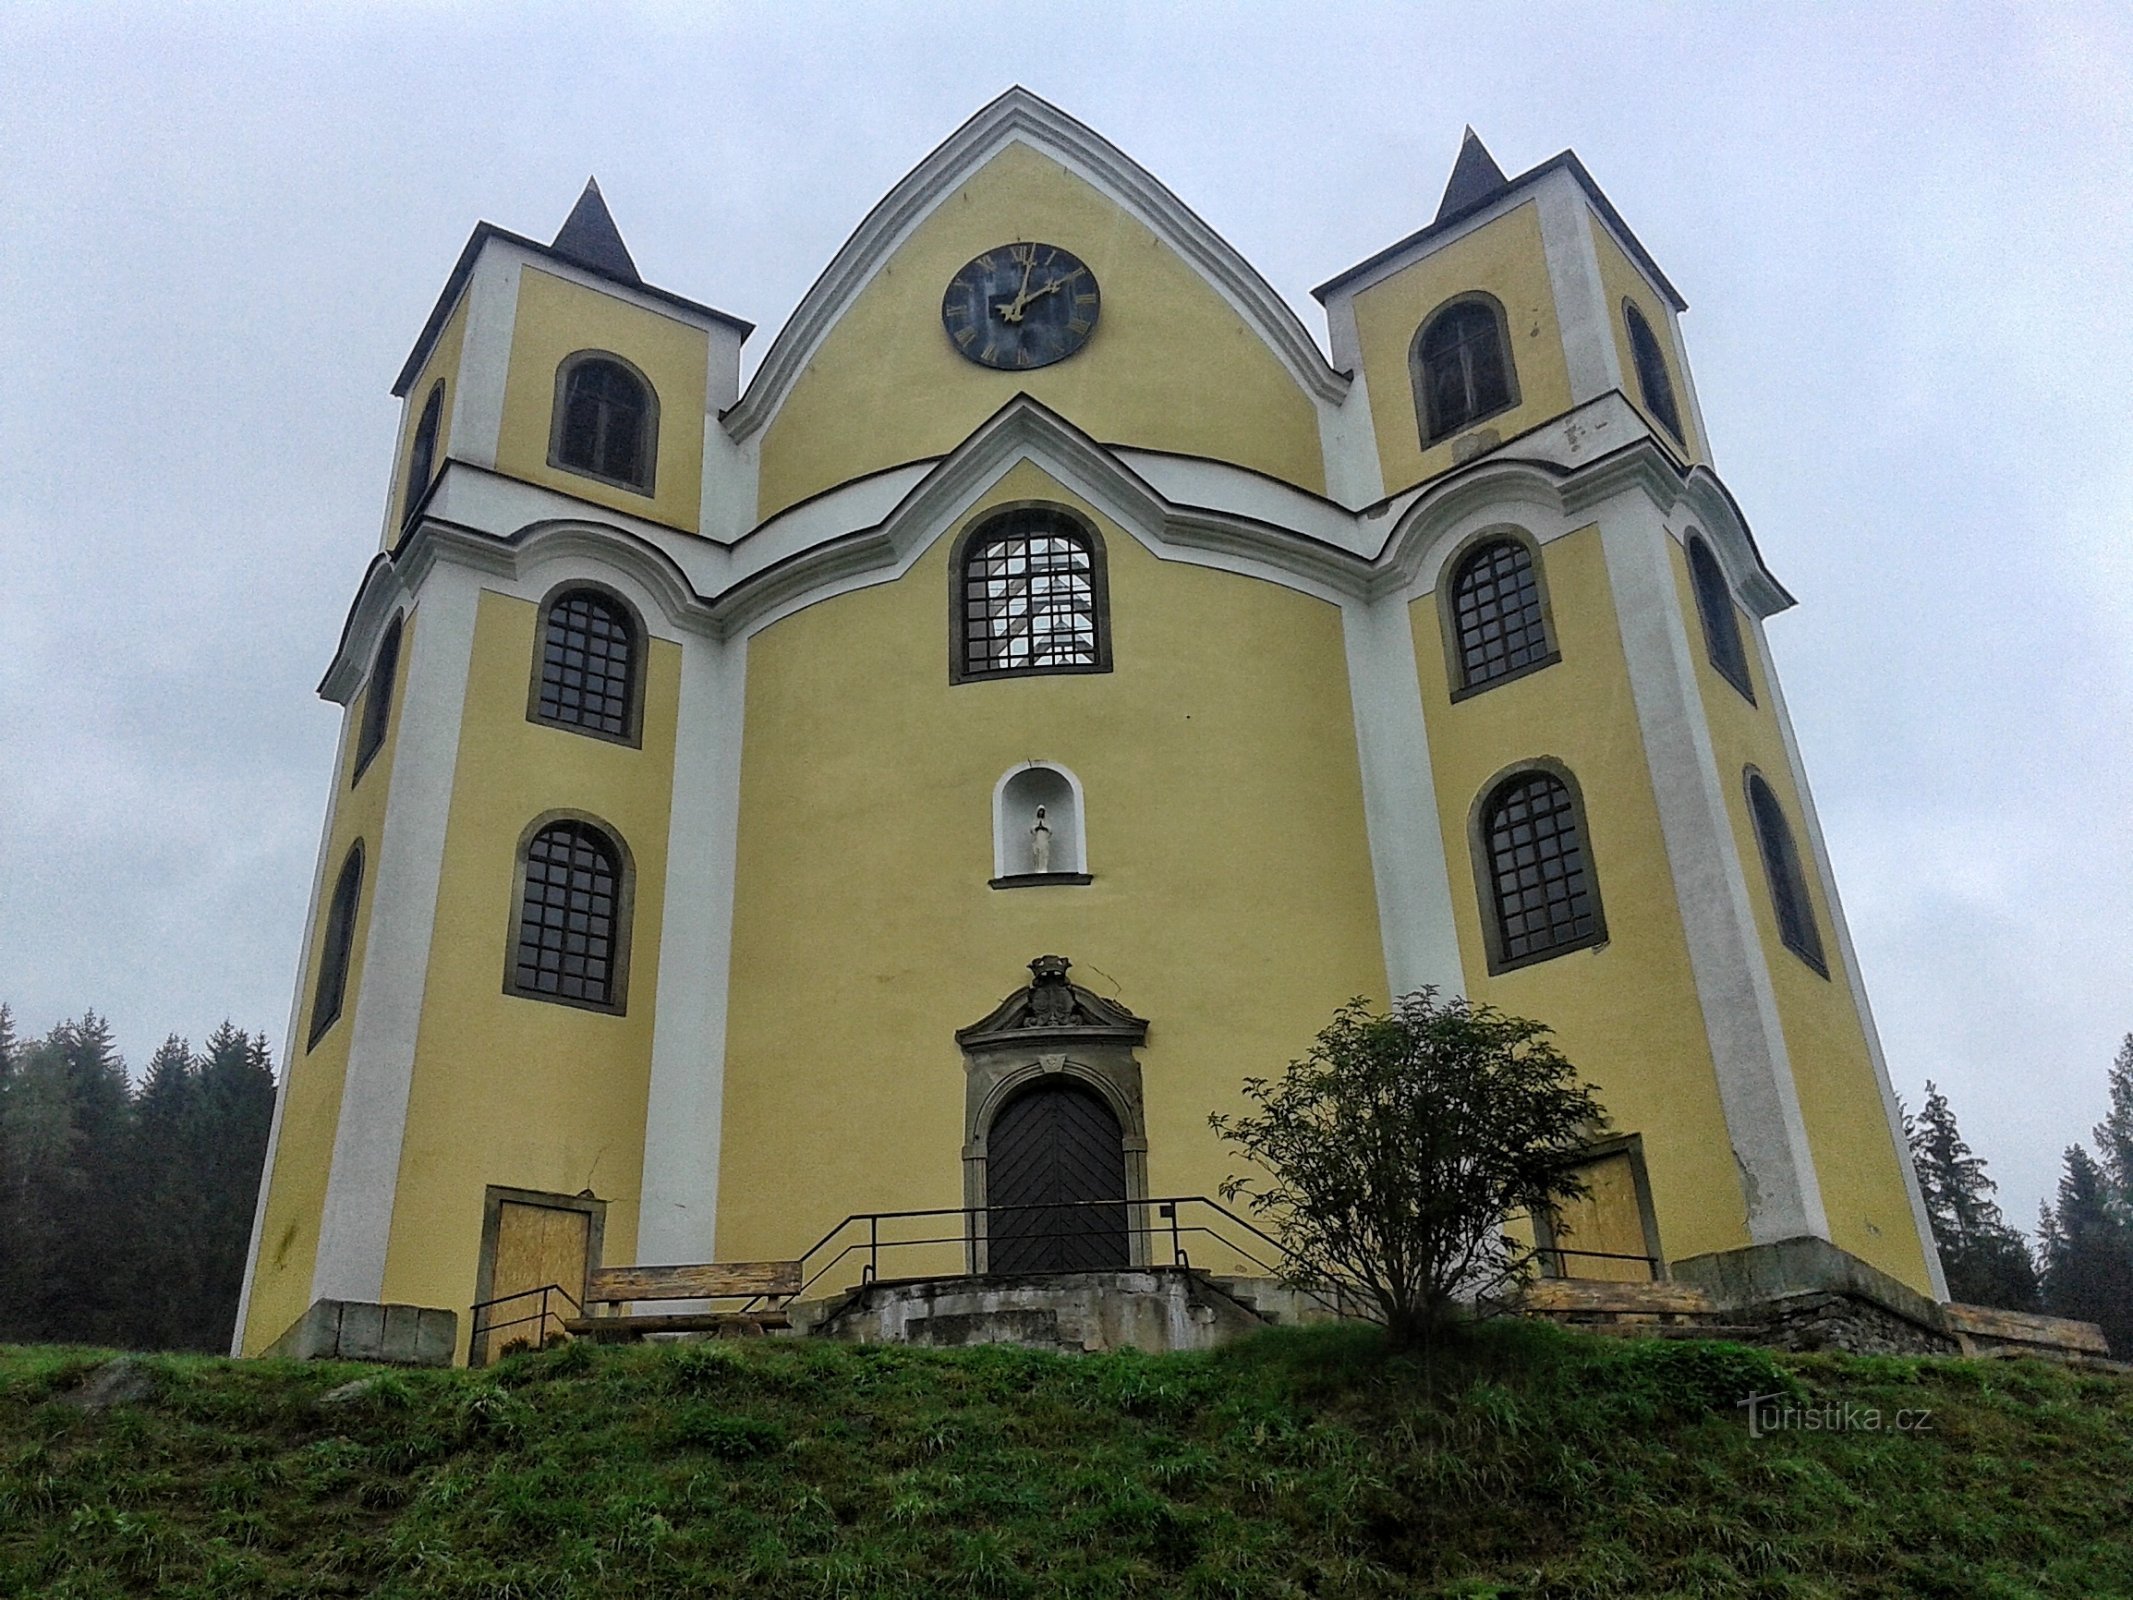 Prednji del cerkve